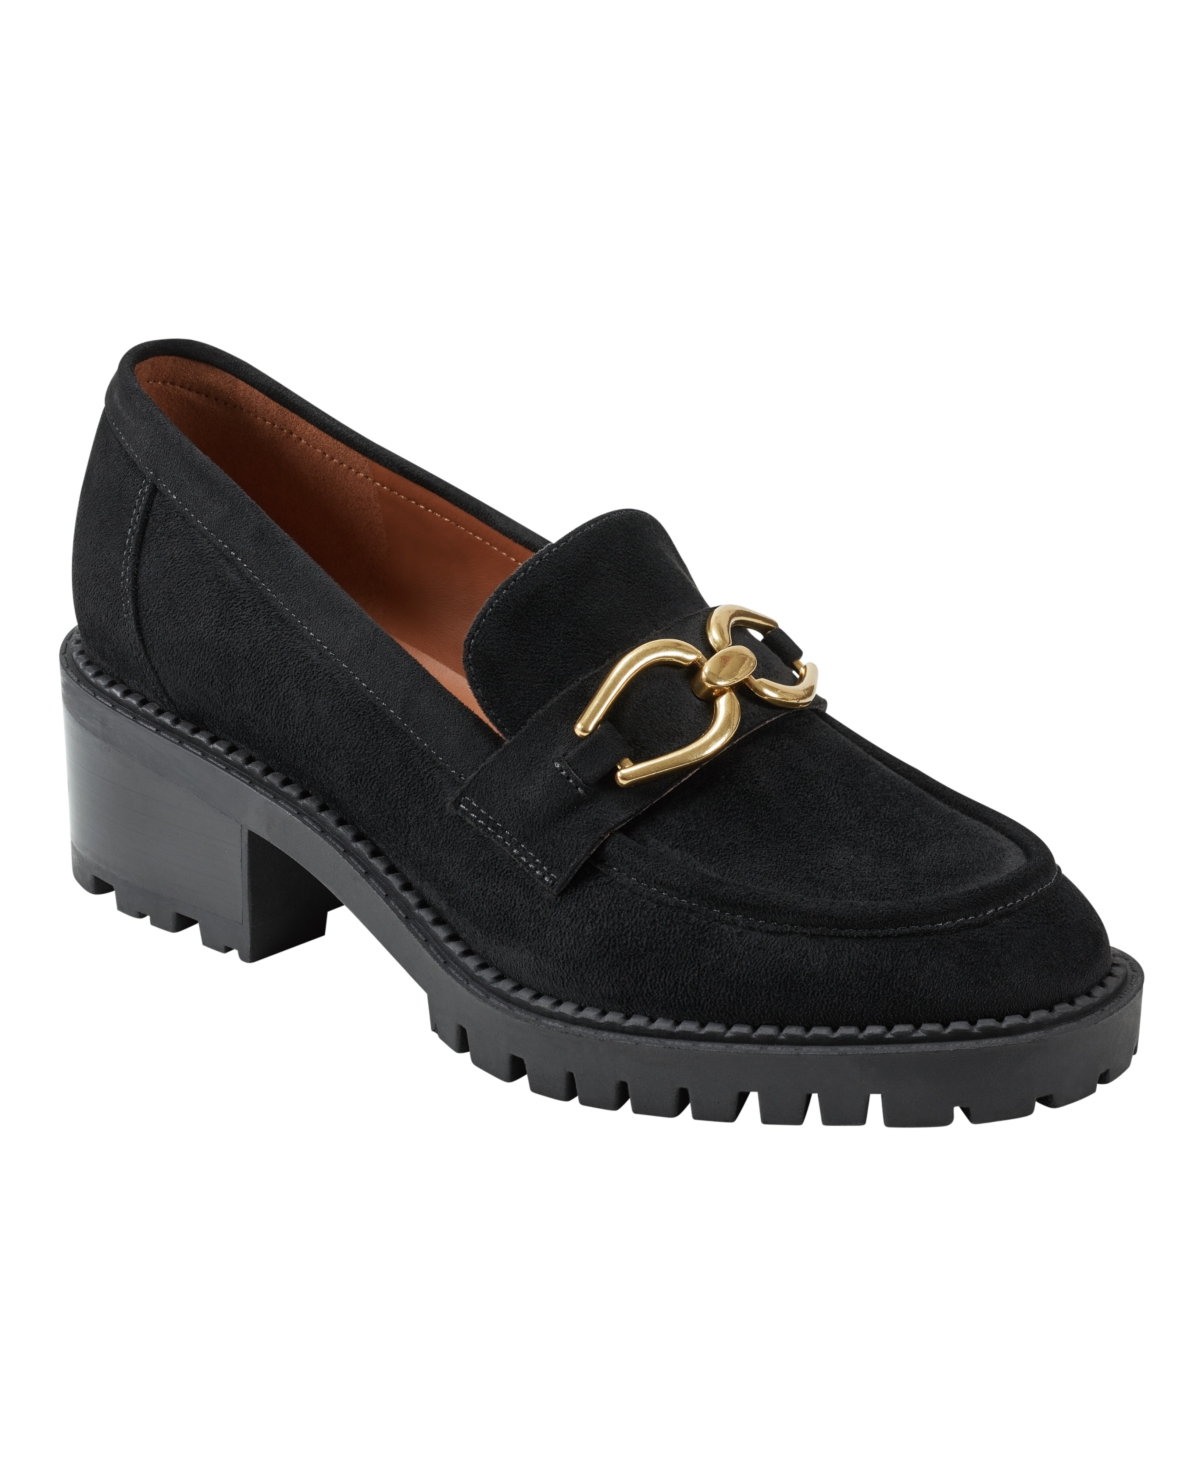 Women's Delanie Slip-On Almond Toe Casual Loafers - Black